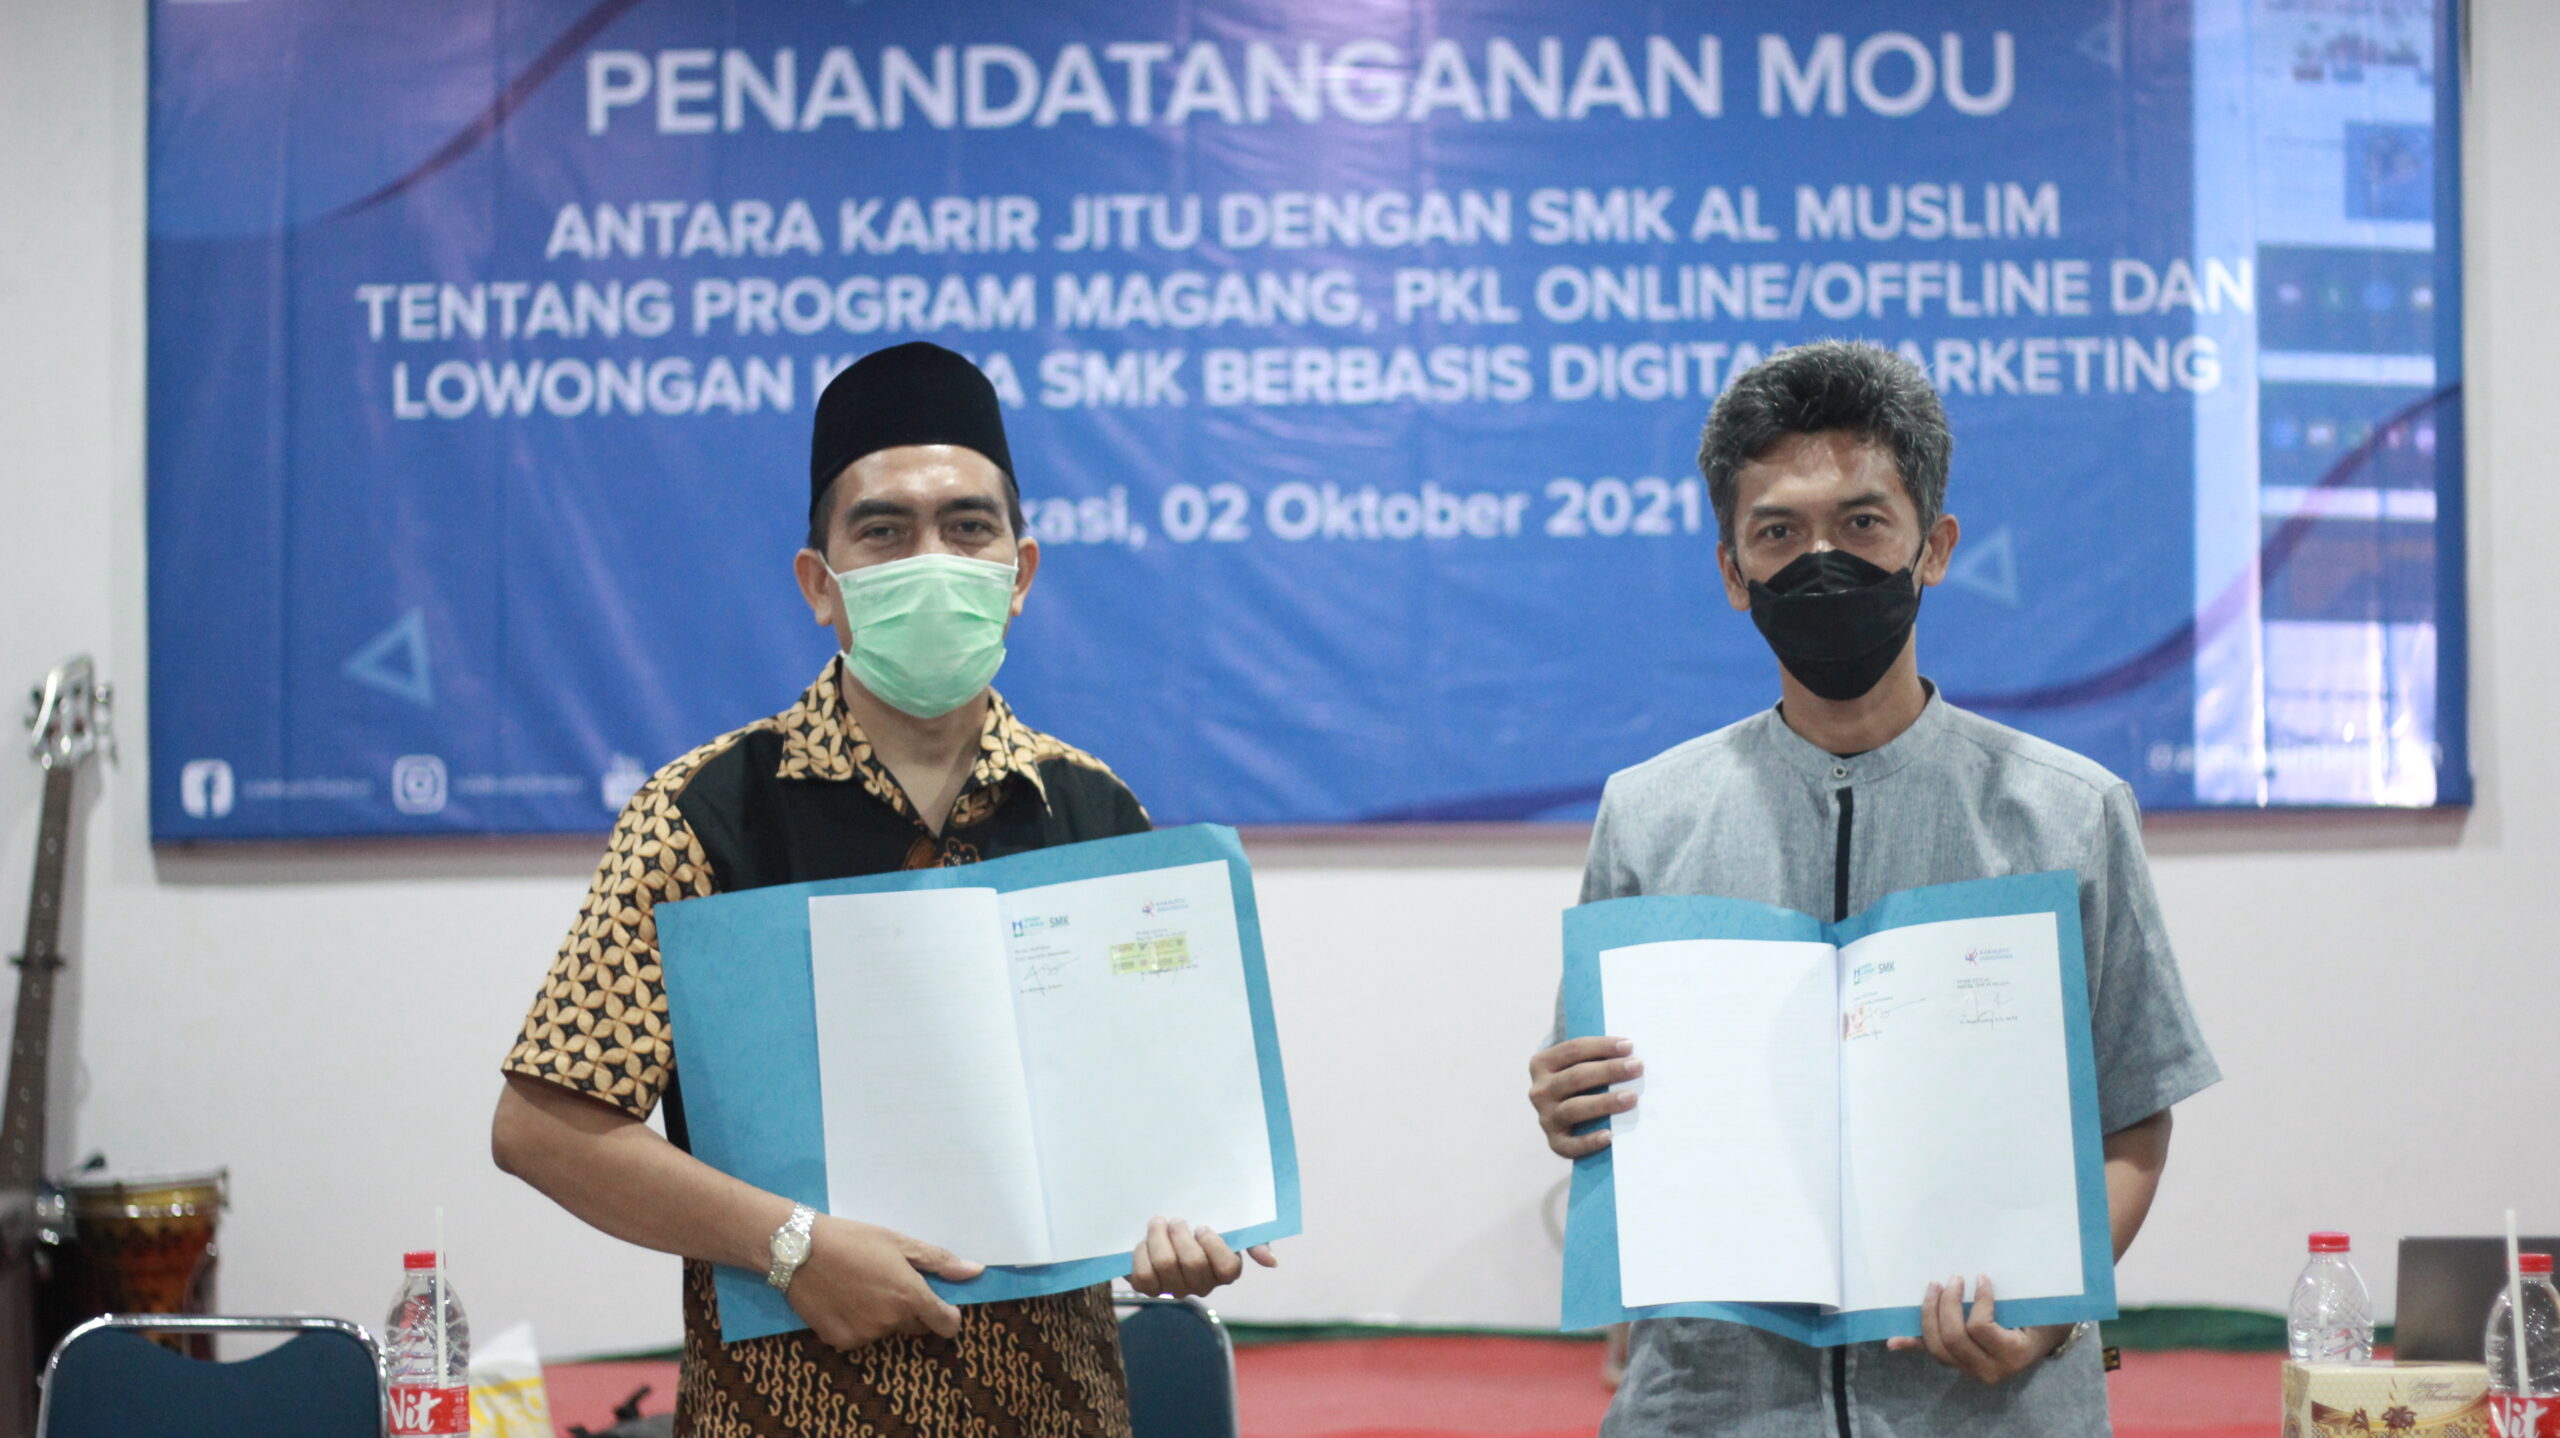 Pembinaan PKL oleh Karir Jitu Indonesia